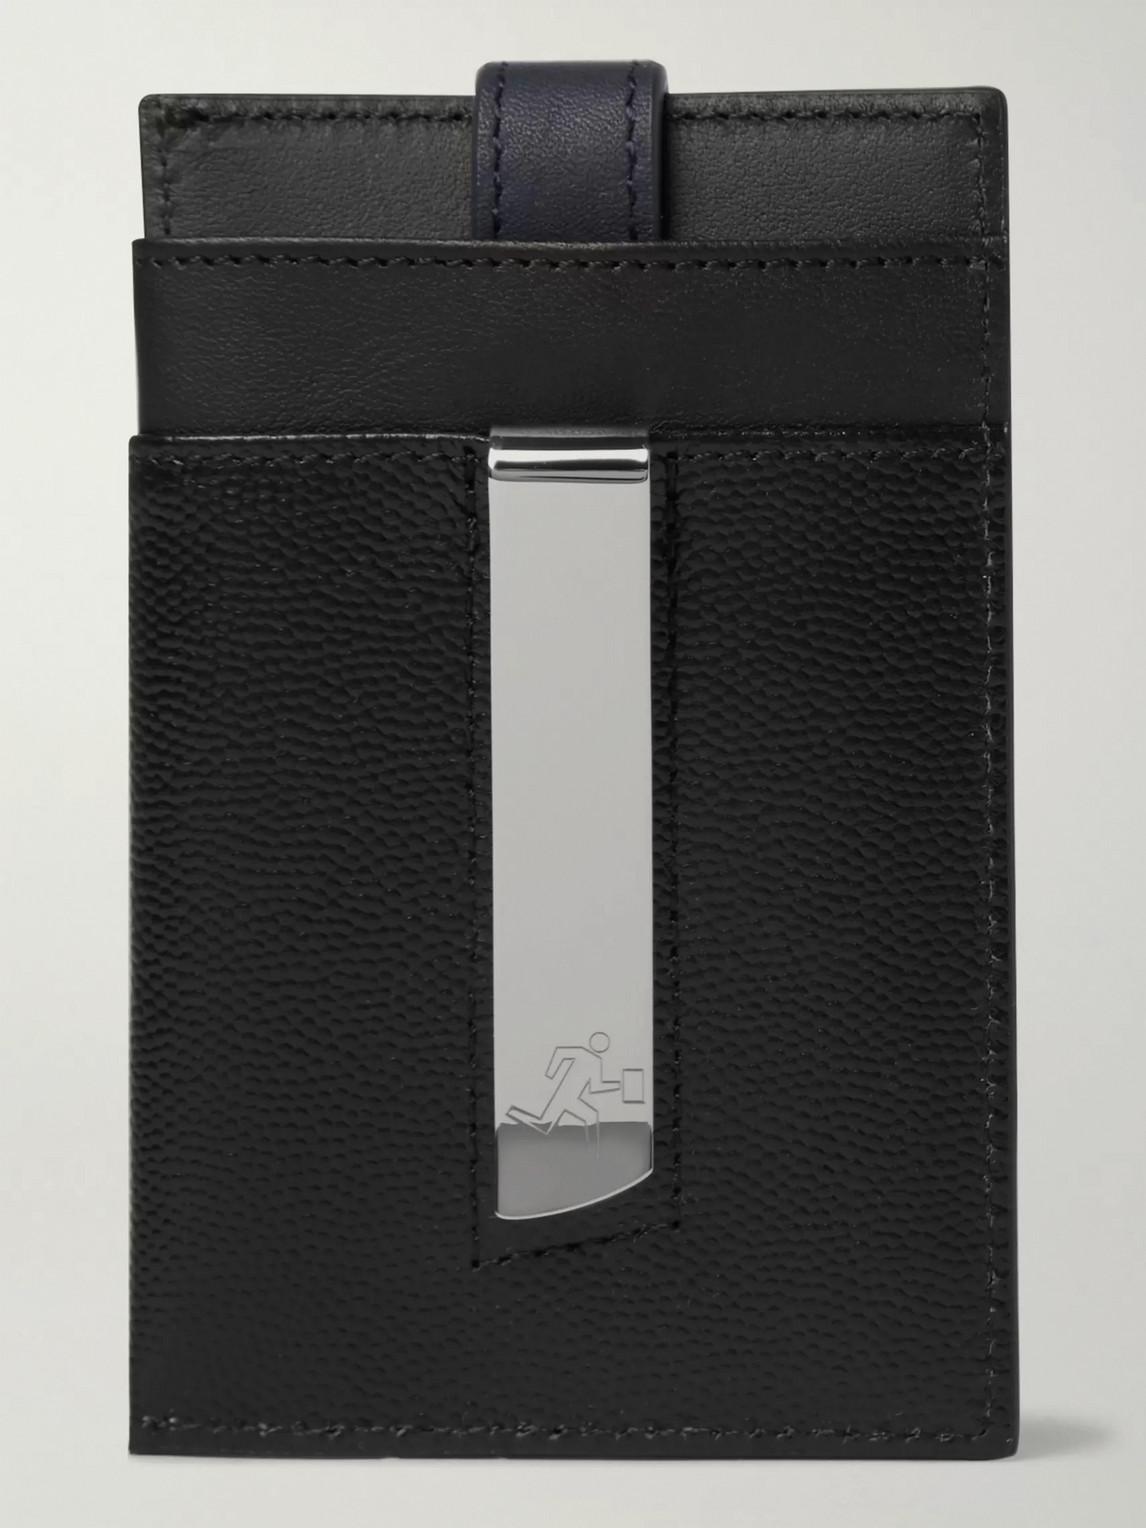 Want Les Essentiels De La Vie Pebble-grain Leather Cardholder With Money Clip In Black